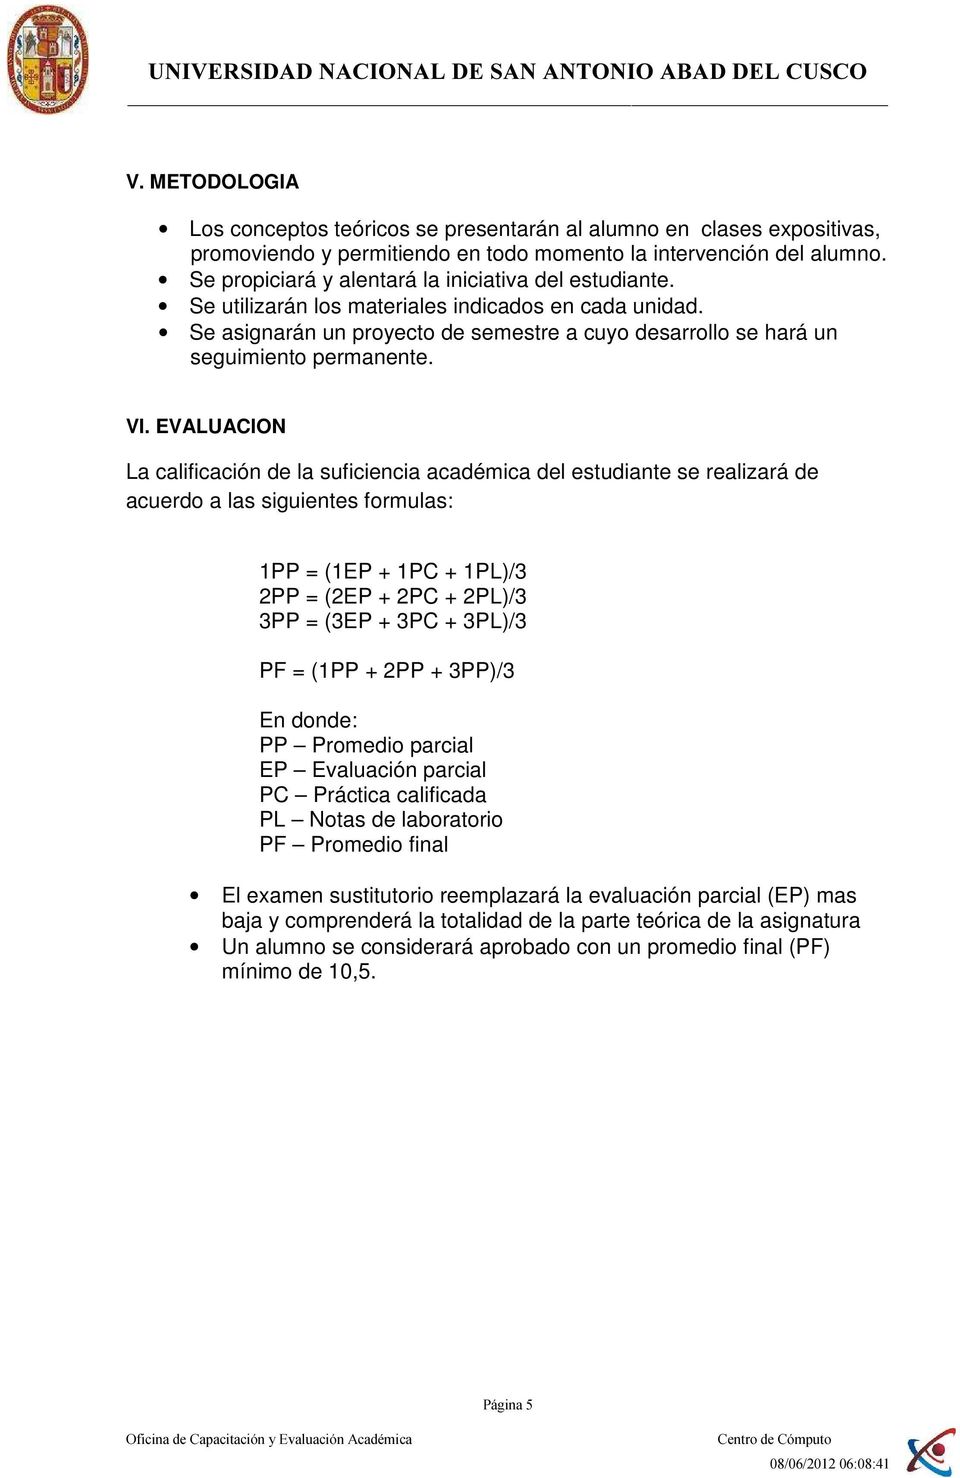 VI. EVALUACION La calificación de la suficiencia académica del estudiante se realizará de acuerdo a las siguientes formulas: 1PP = (1EP + 1PC + 1PL)/3 2PP = (2EP + 2PC + 2PL)/3 3PP = (3EP + 3PC +